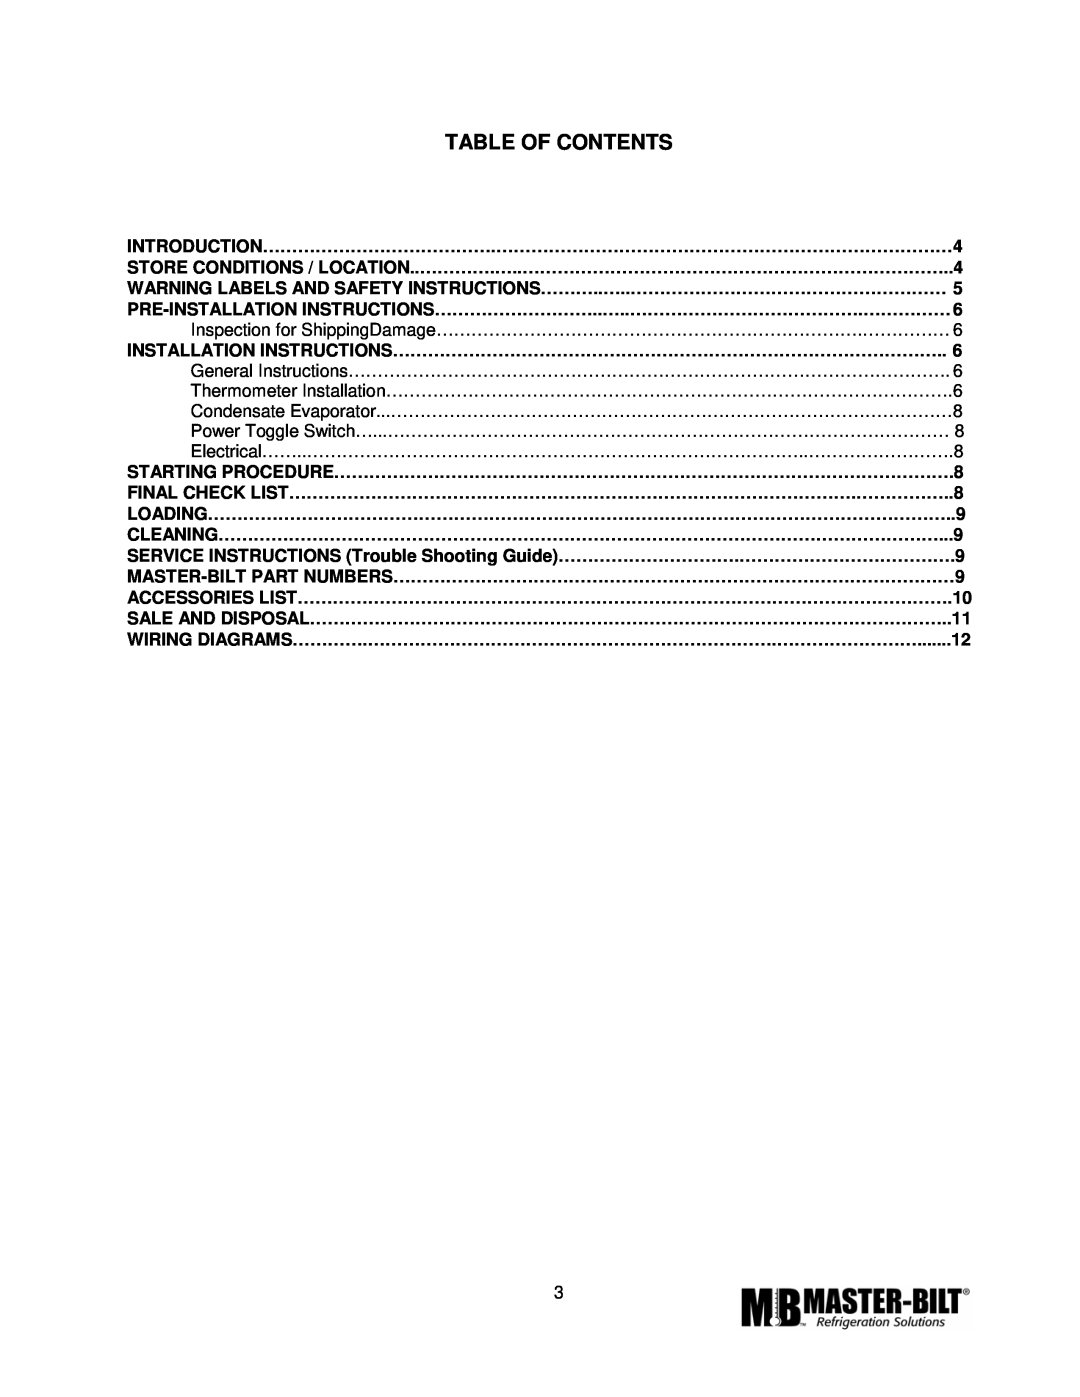 Master Bilt MPM-72 manual Table Of Contents 